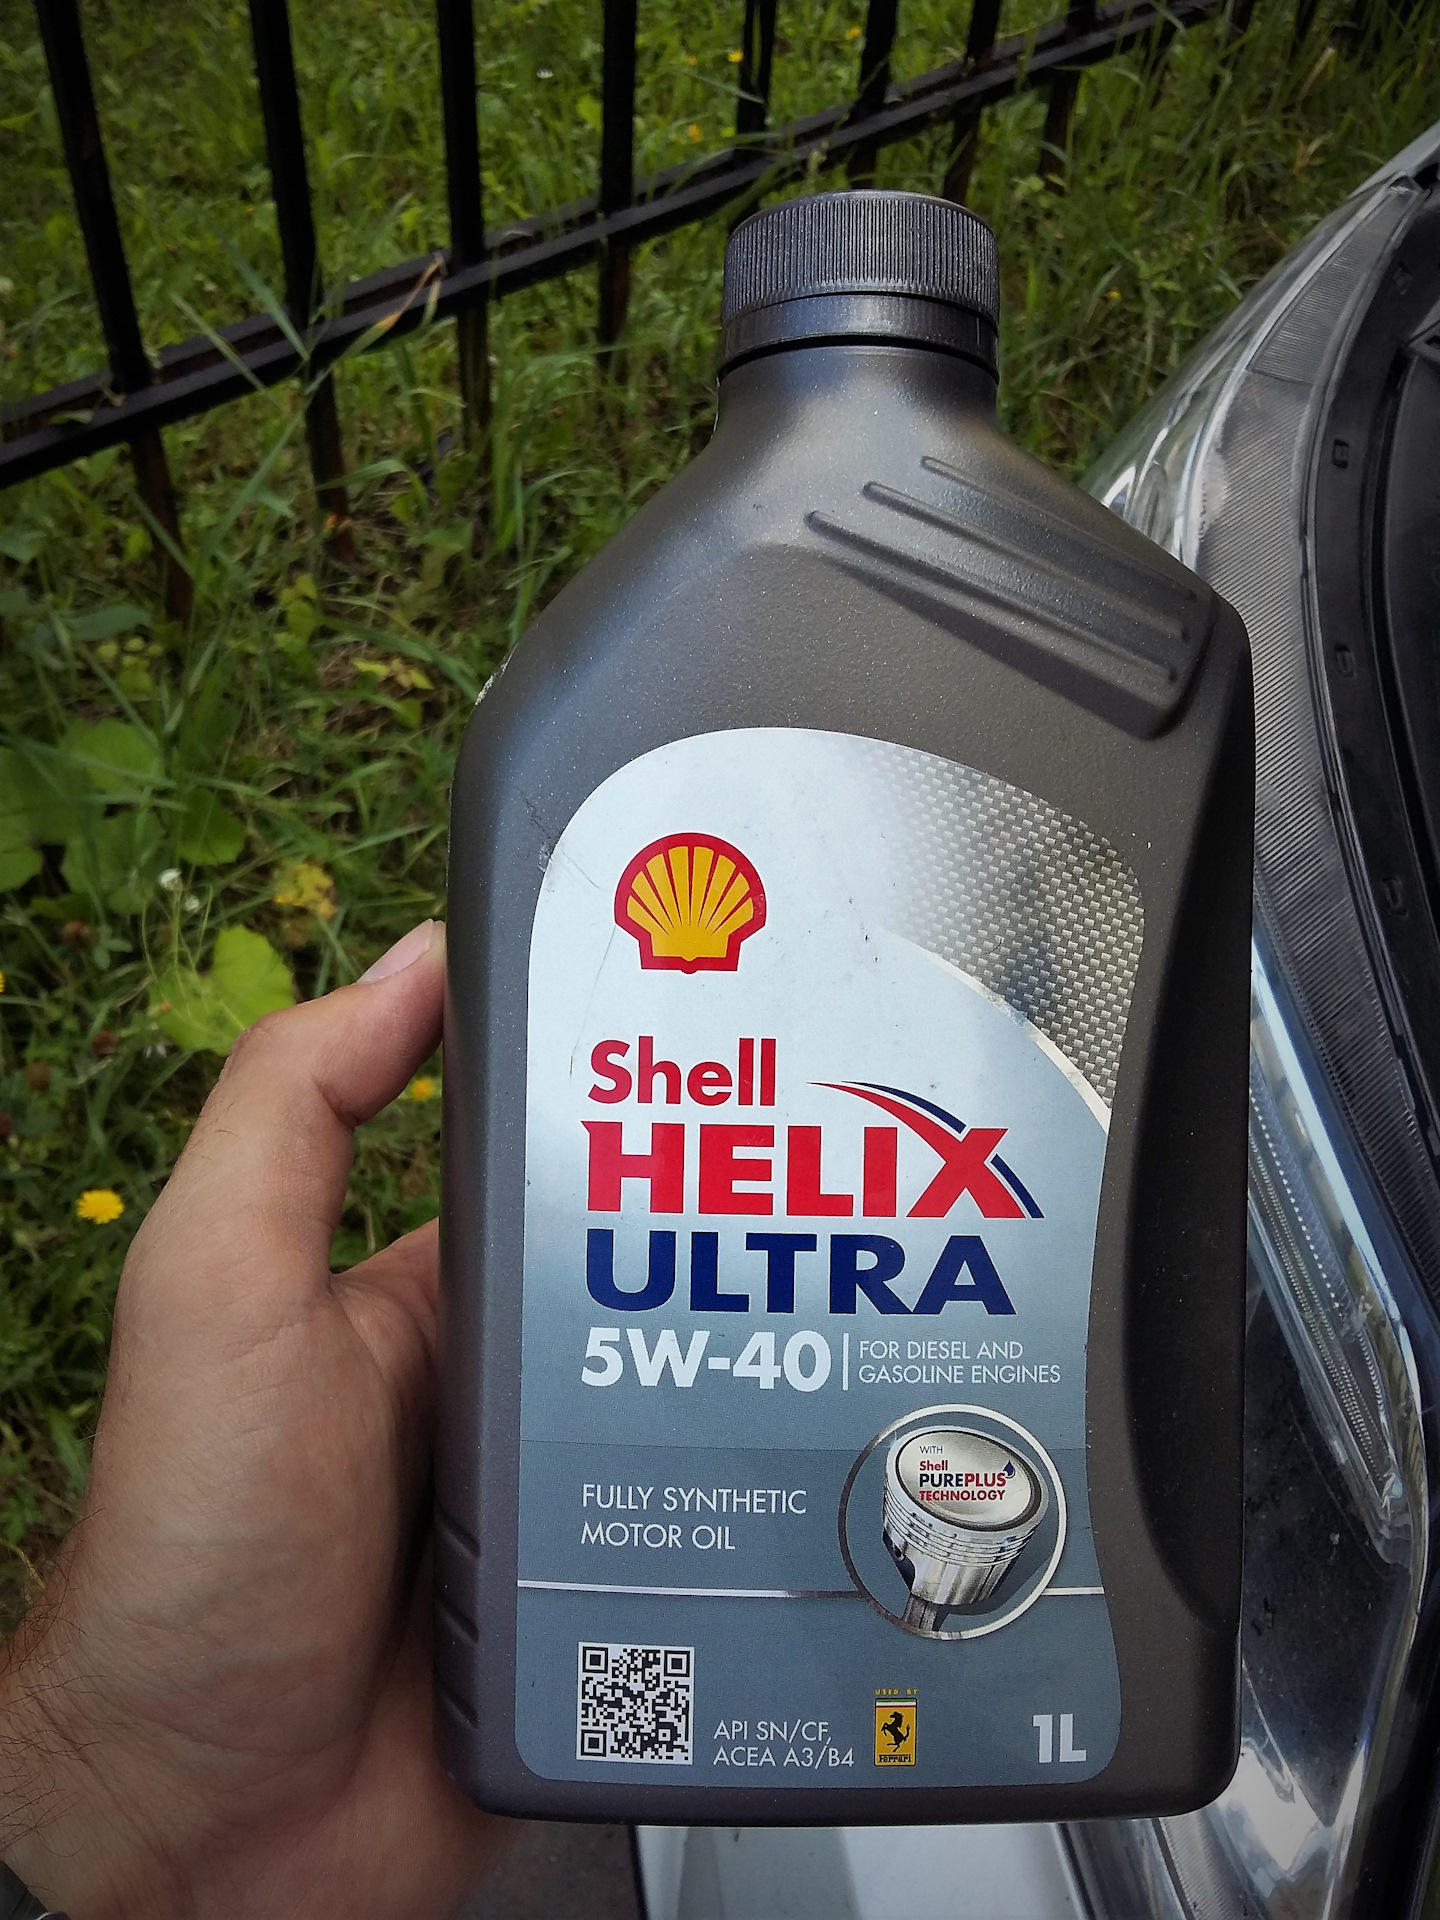 Моторное масло для соренто. Моторное масло для Киа Соренто 2.4 бензин. Масло для Kia Sorento дизель 2.2. Масло мобил в Киа Соренто дизель 2,5. Масло моторное для Киа Соренто 2.4 бензин 2012.